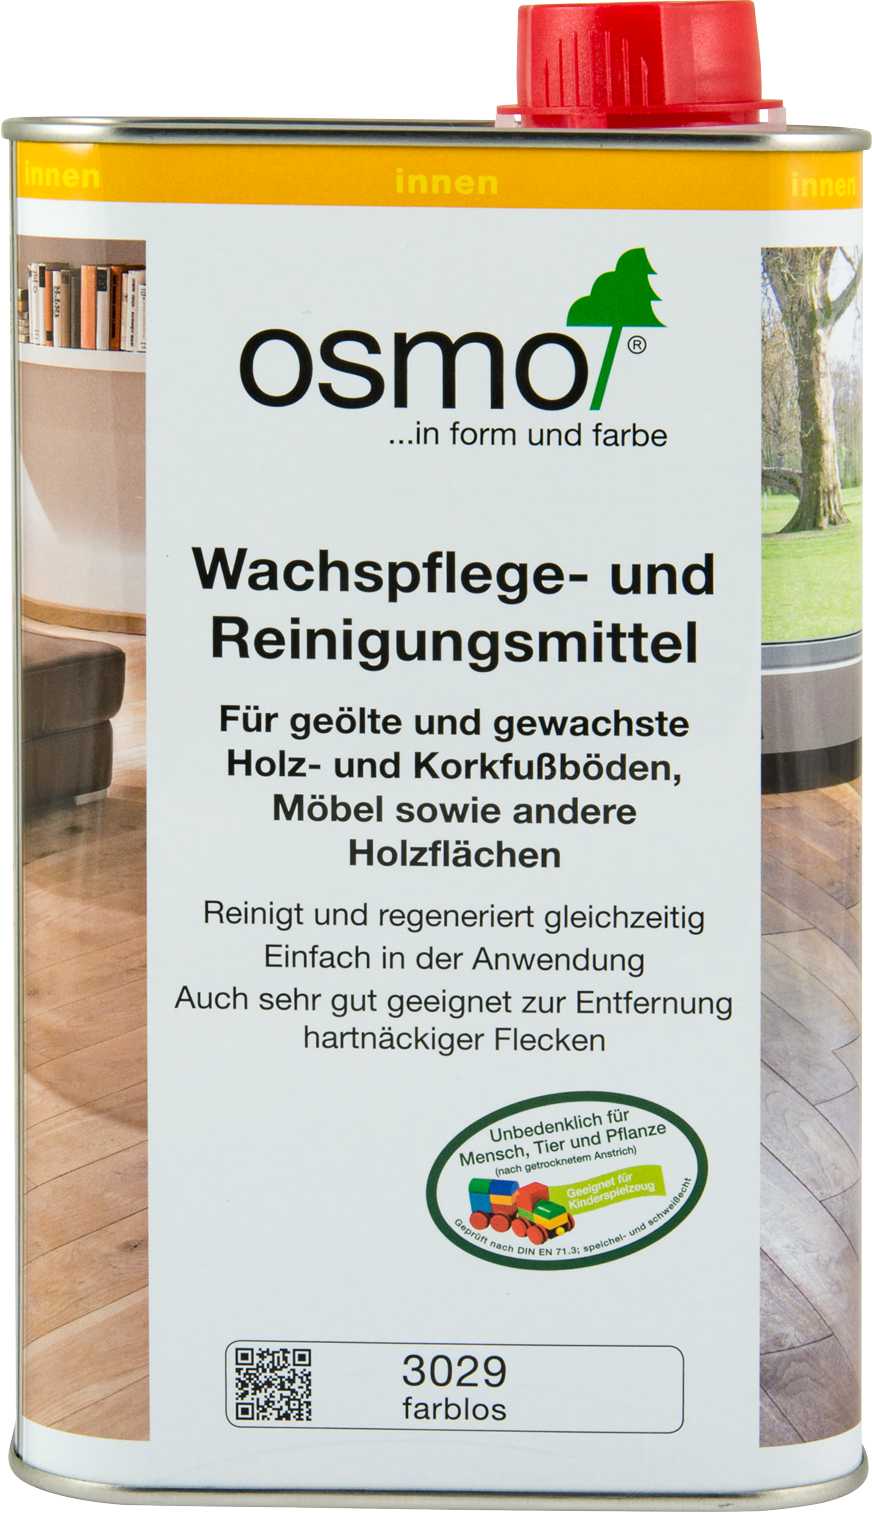 OSMO Wachspflege- und Reinigungsmittel - FREESE Holz 